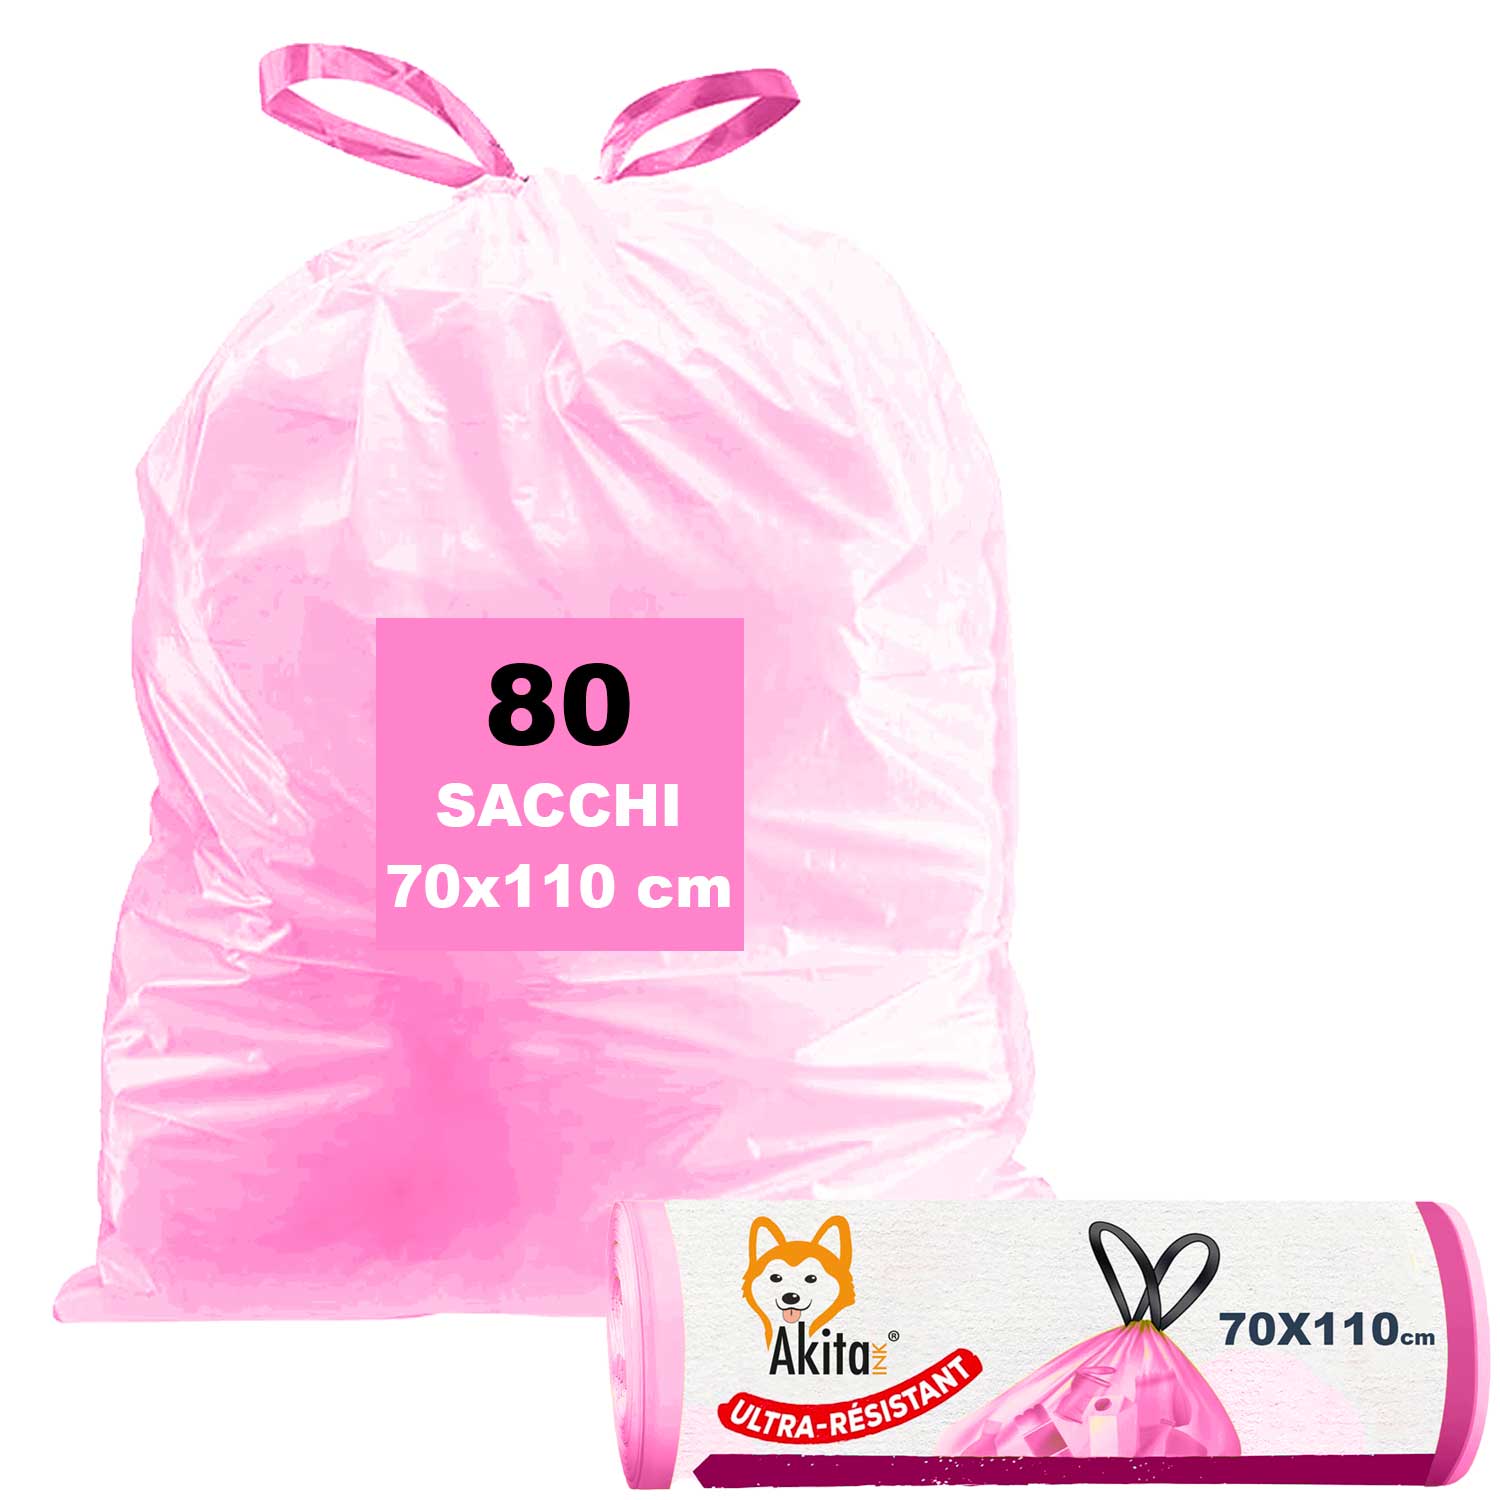 Akitaink, 80 sacchi per pattumiera 70x110 con manici rosa alta resistenza, 110l.